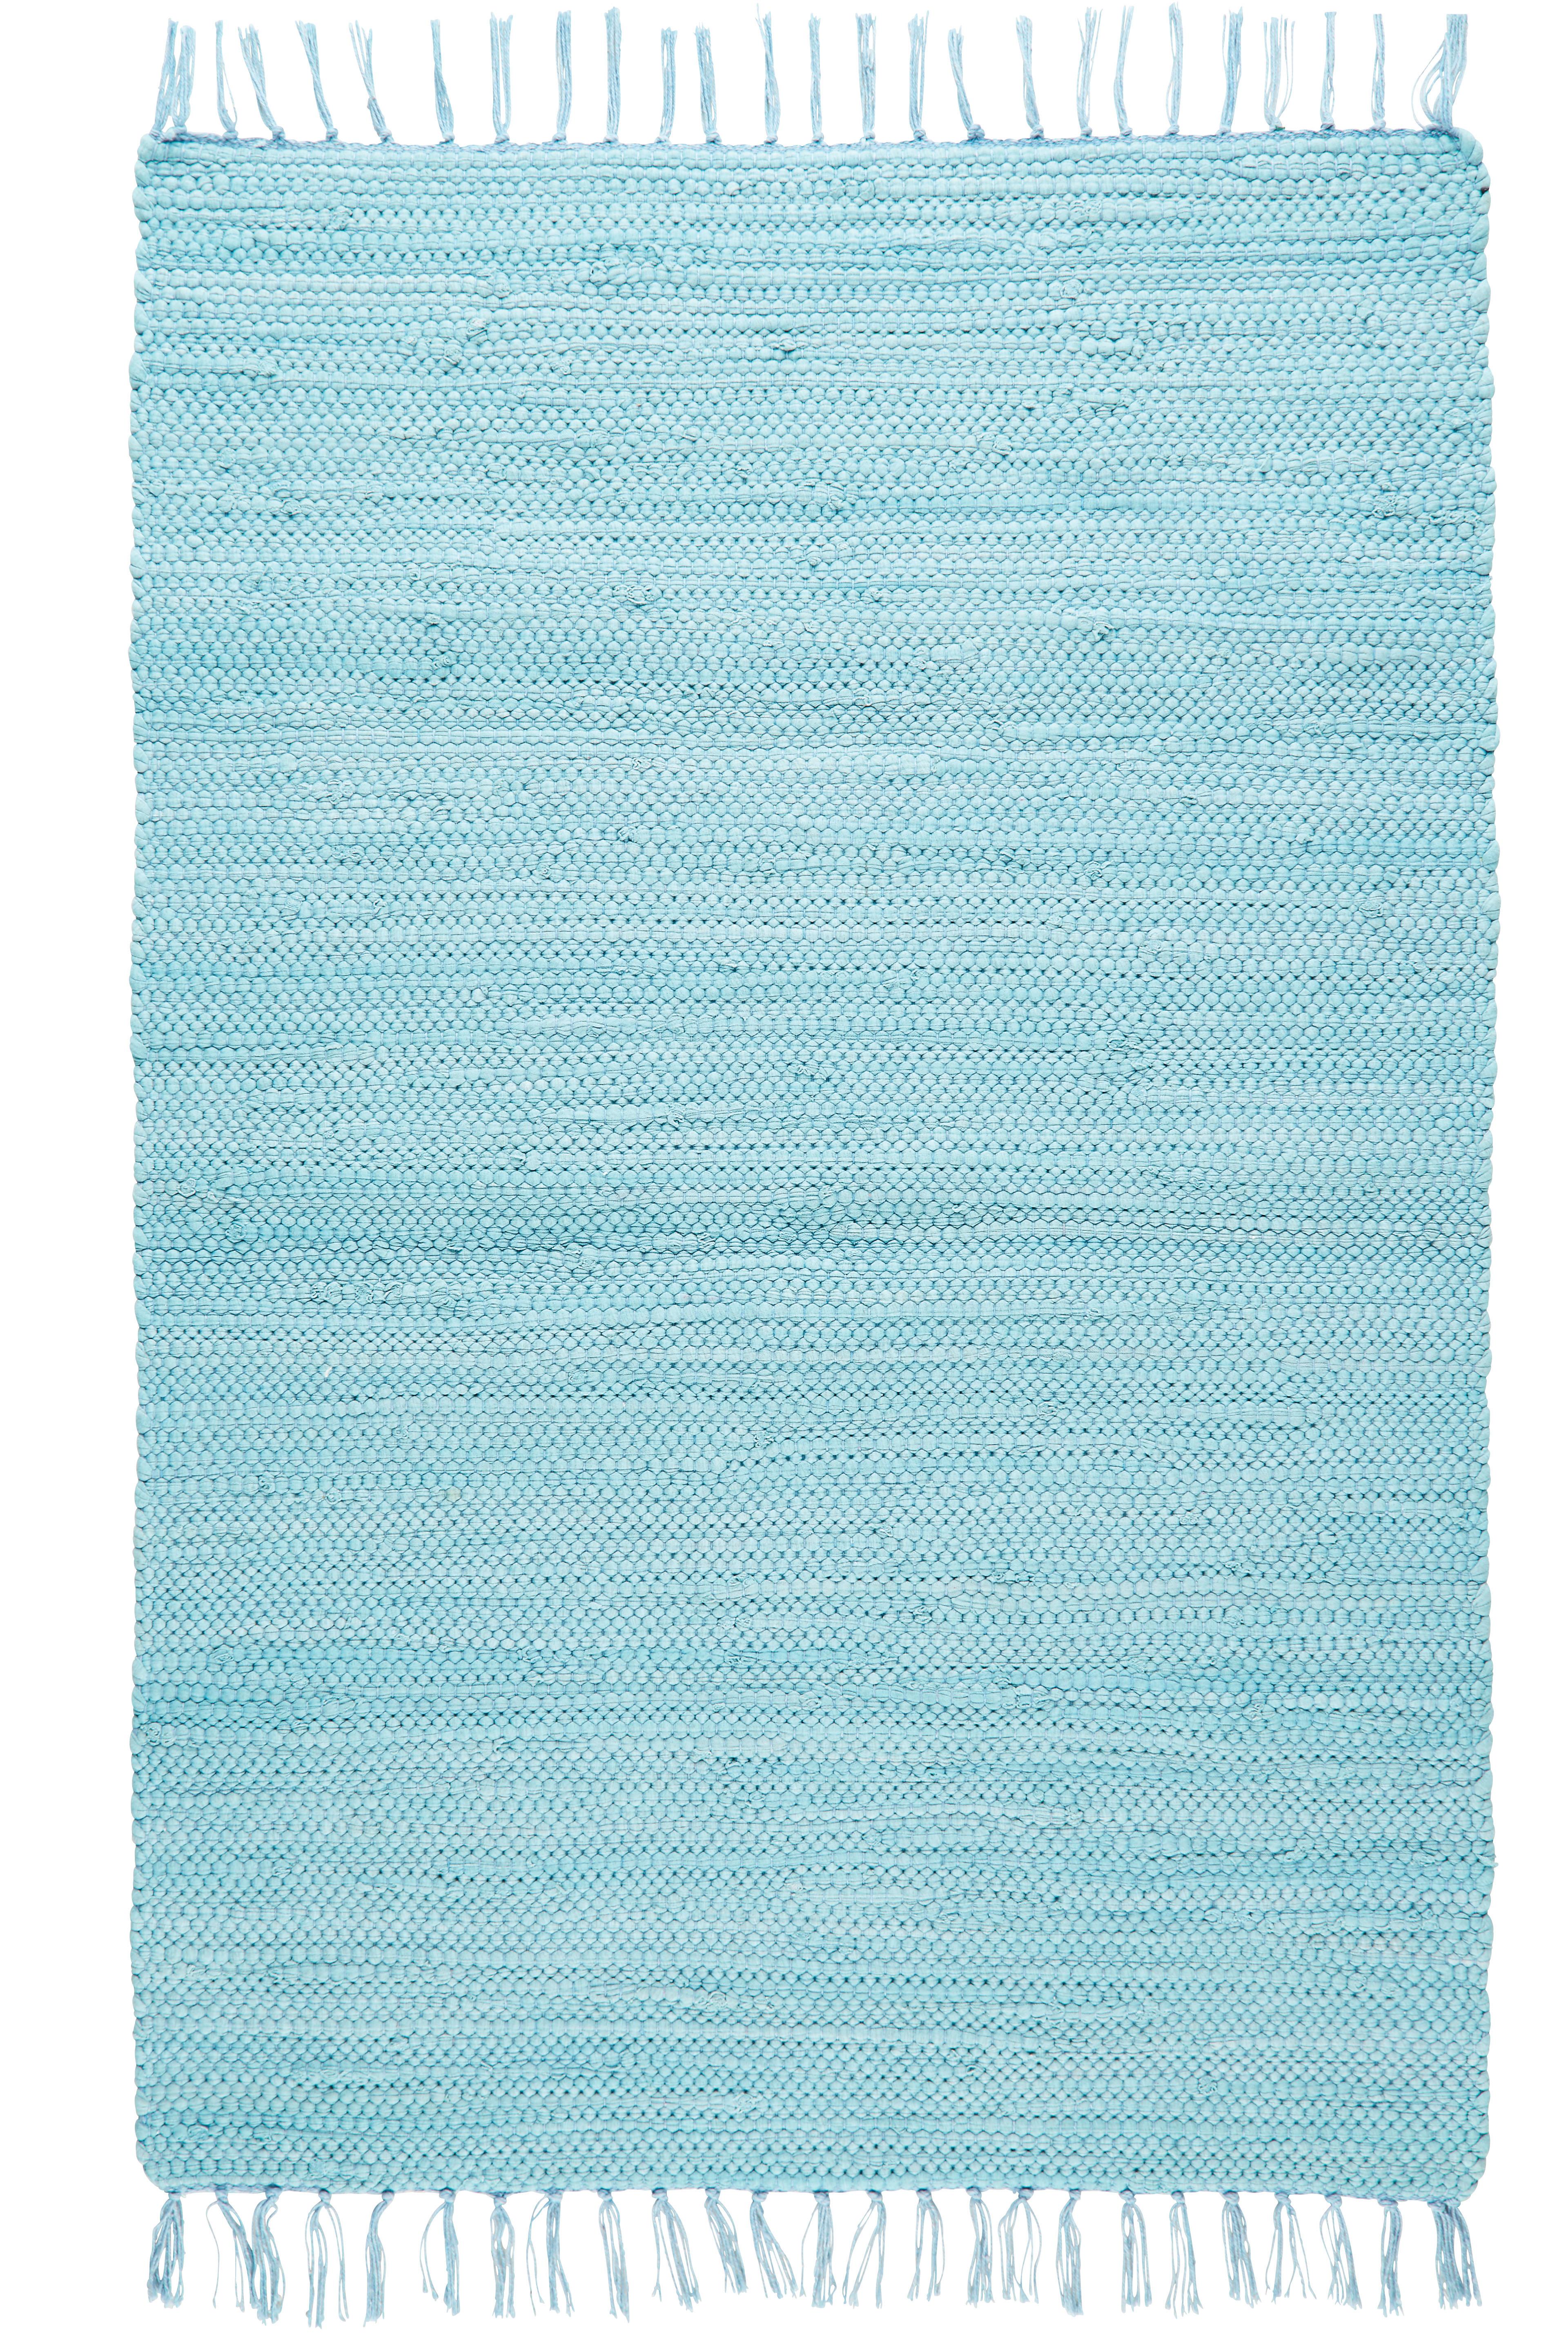 Hadrový Koberec Julia 1, 60/90cm, Modrá - světle modrá, Romantický / Rustikální, textil (60/90cm) - Modern Living